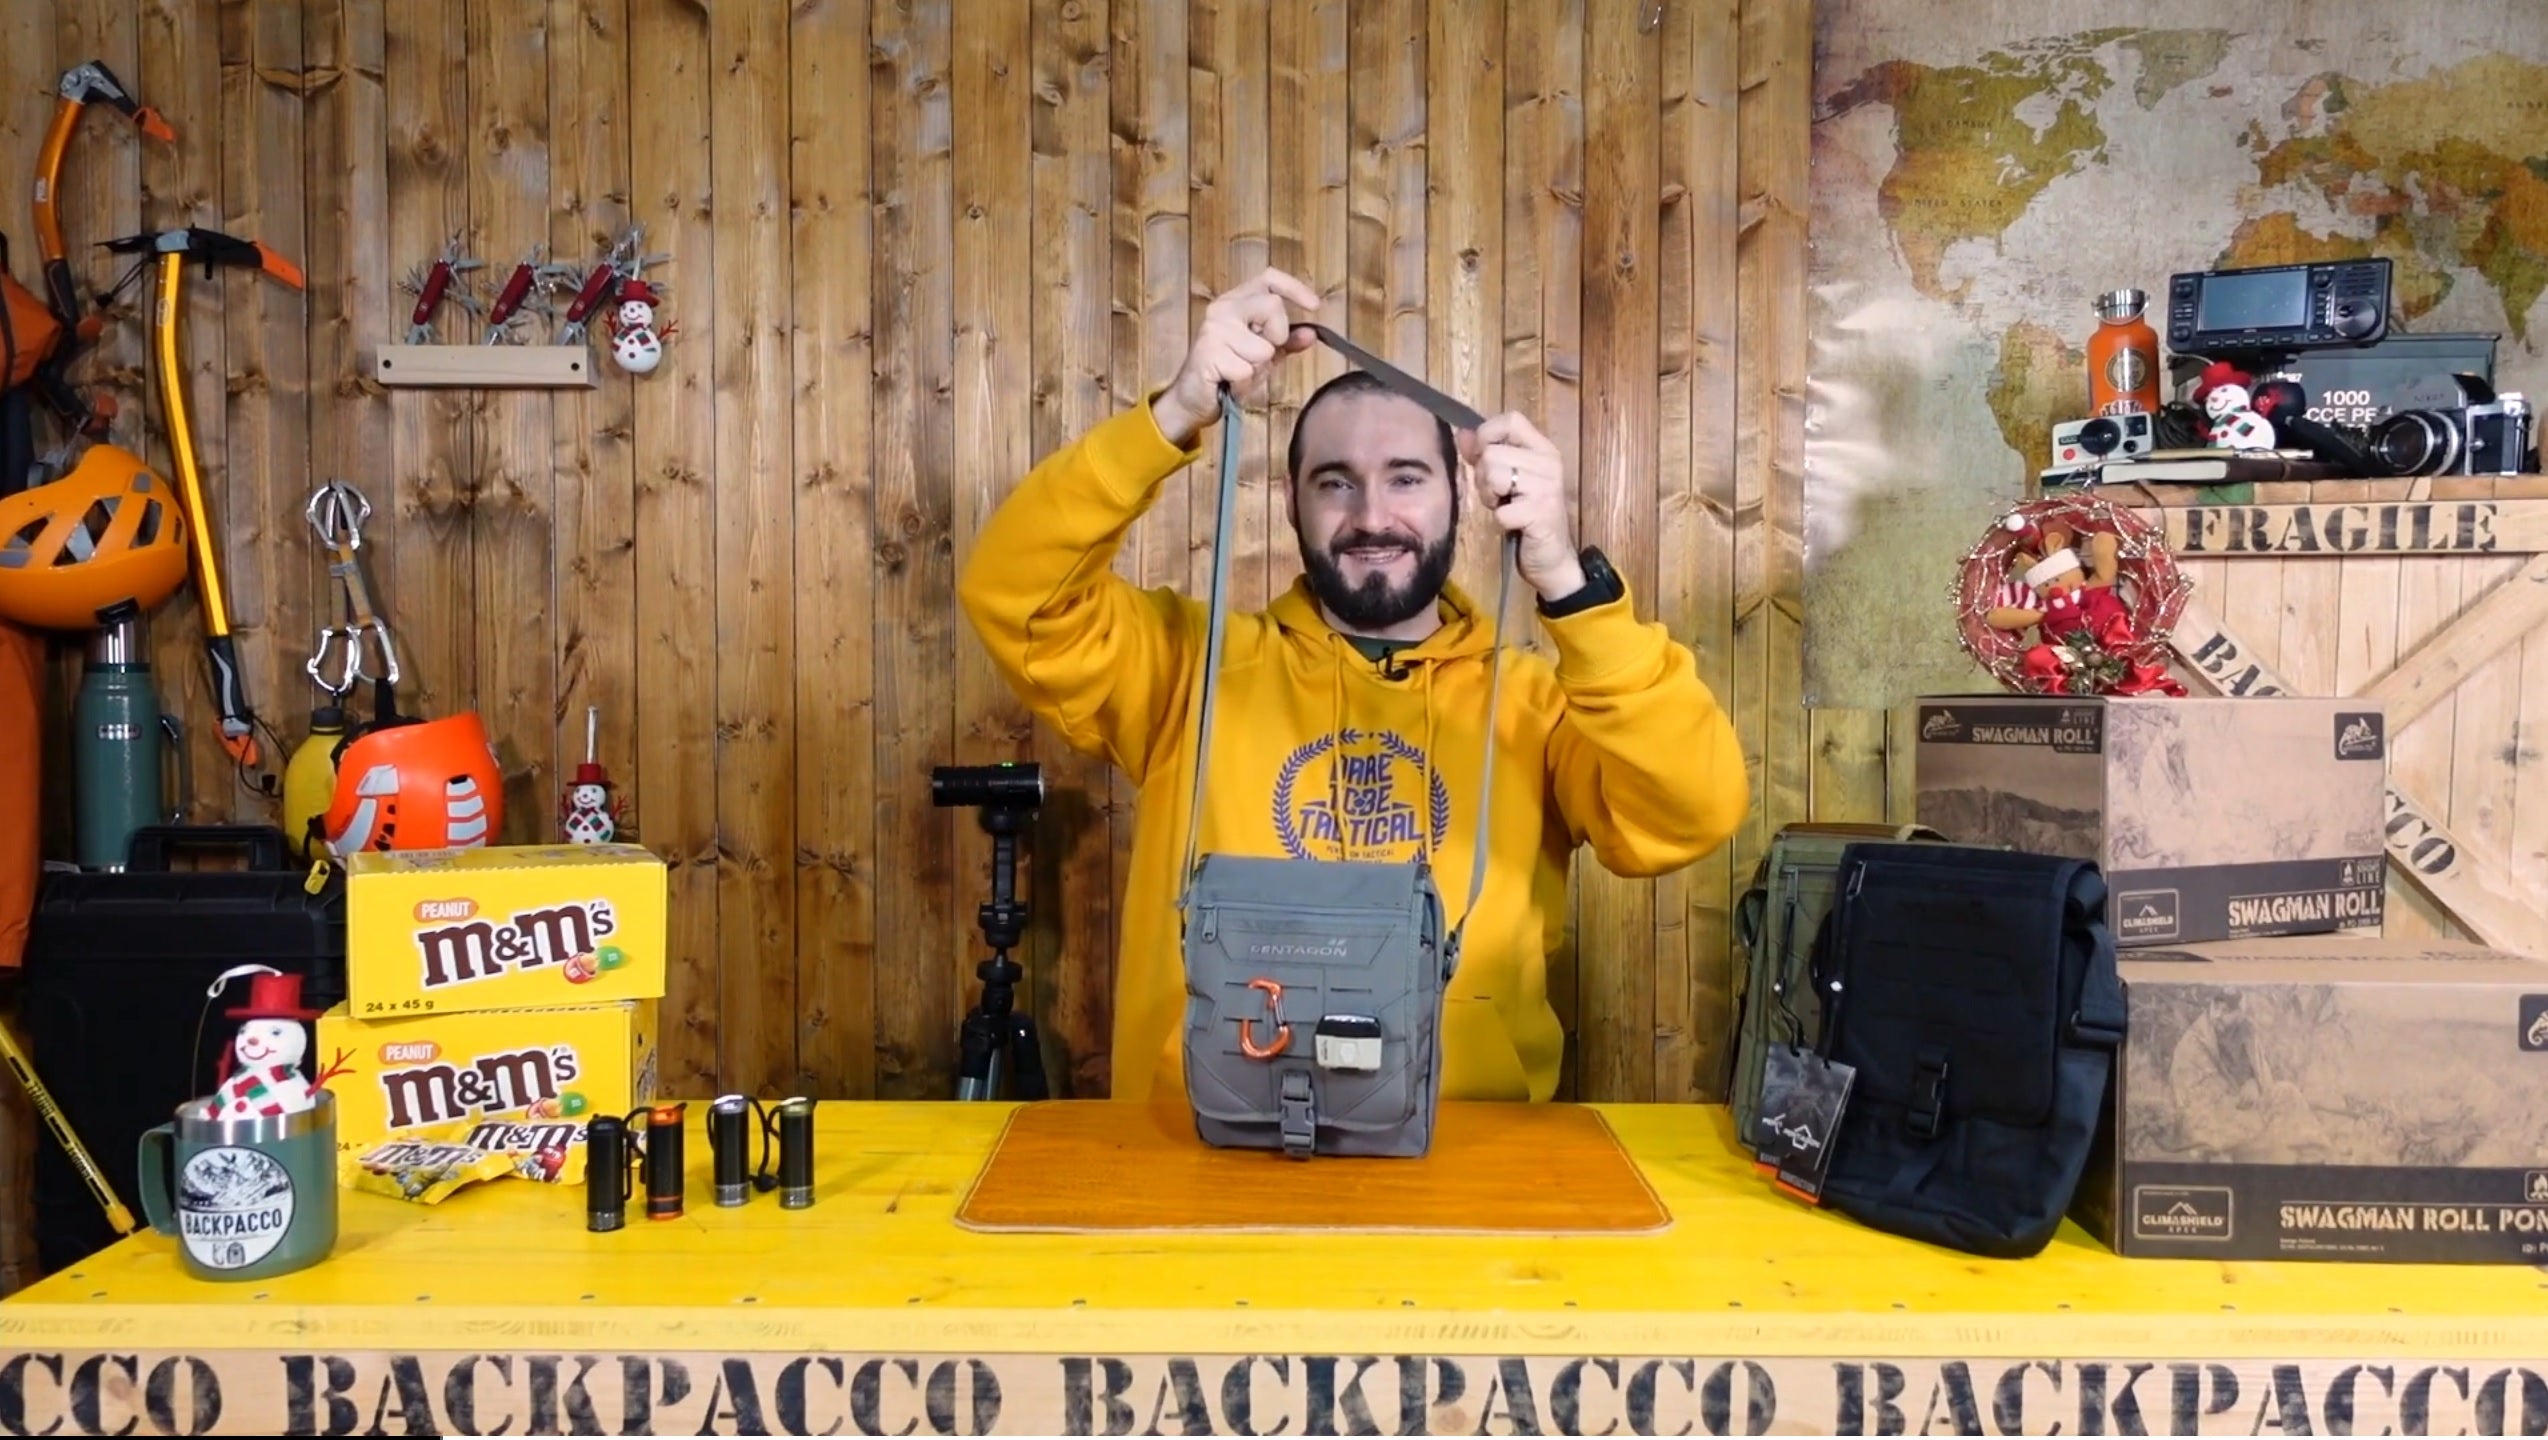 copertina del video dove paolo di backpacco spiega la messenger bag di pentagon